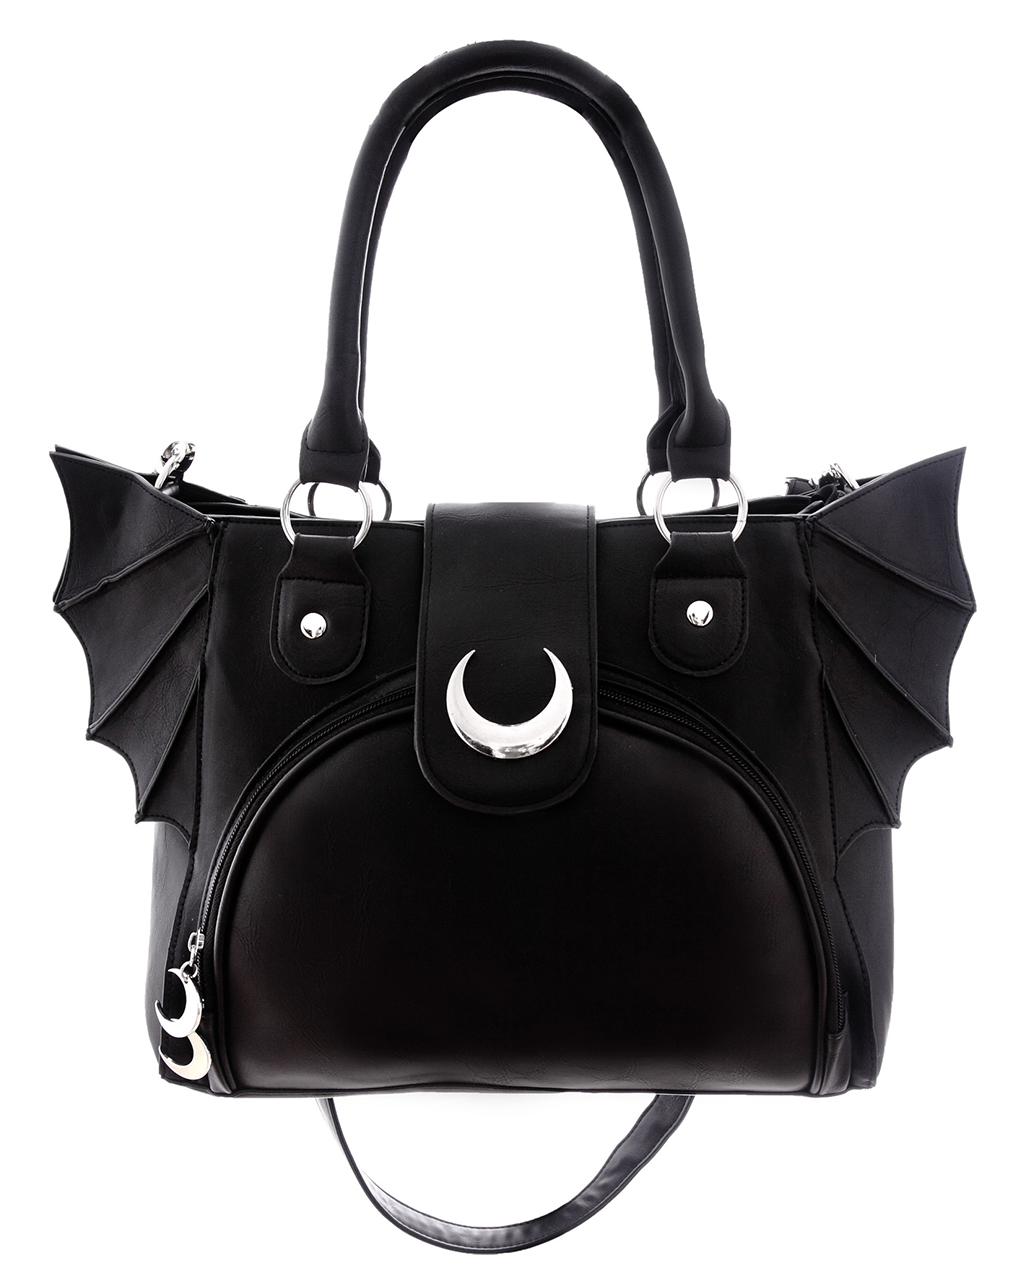 moon bag gothic handtasche mit fledermausfluegel moon bag gothic handbag with bat wings 53770 01